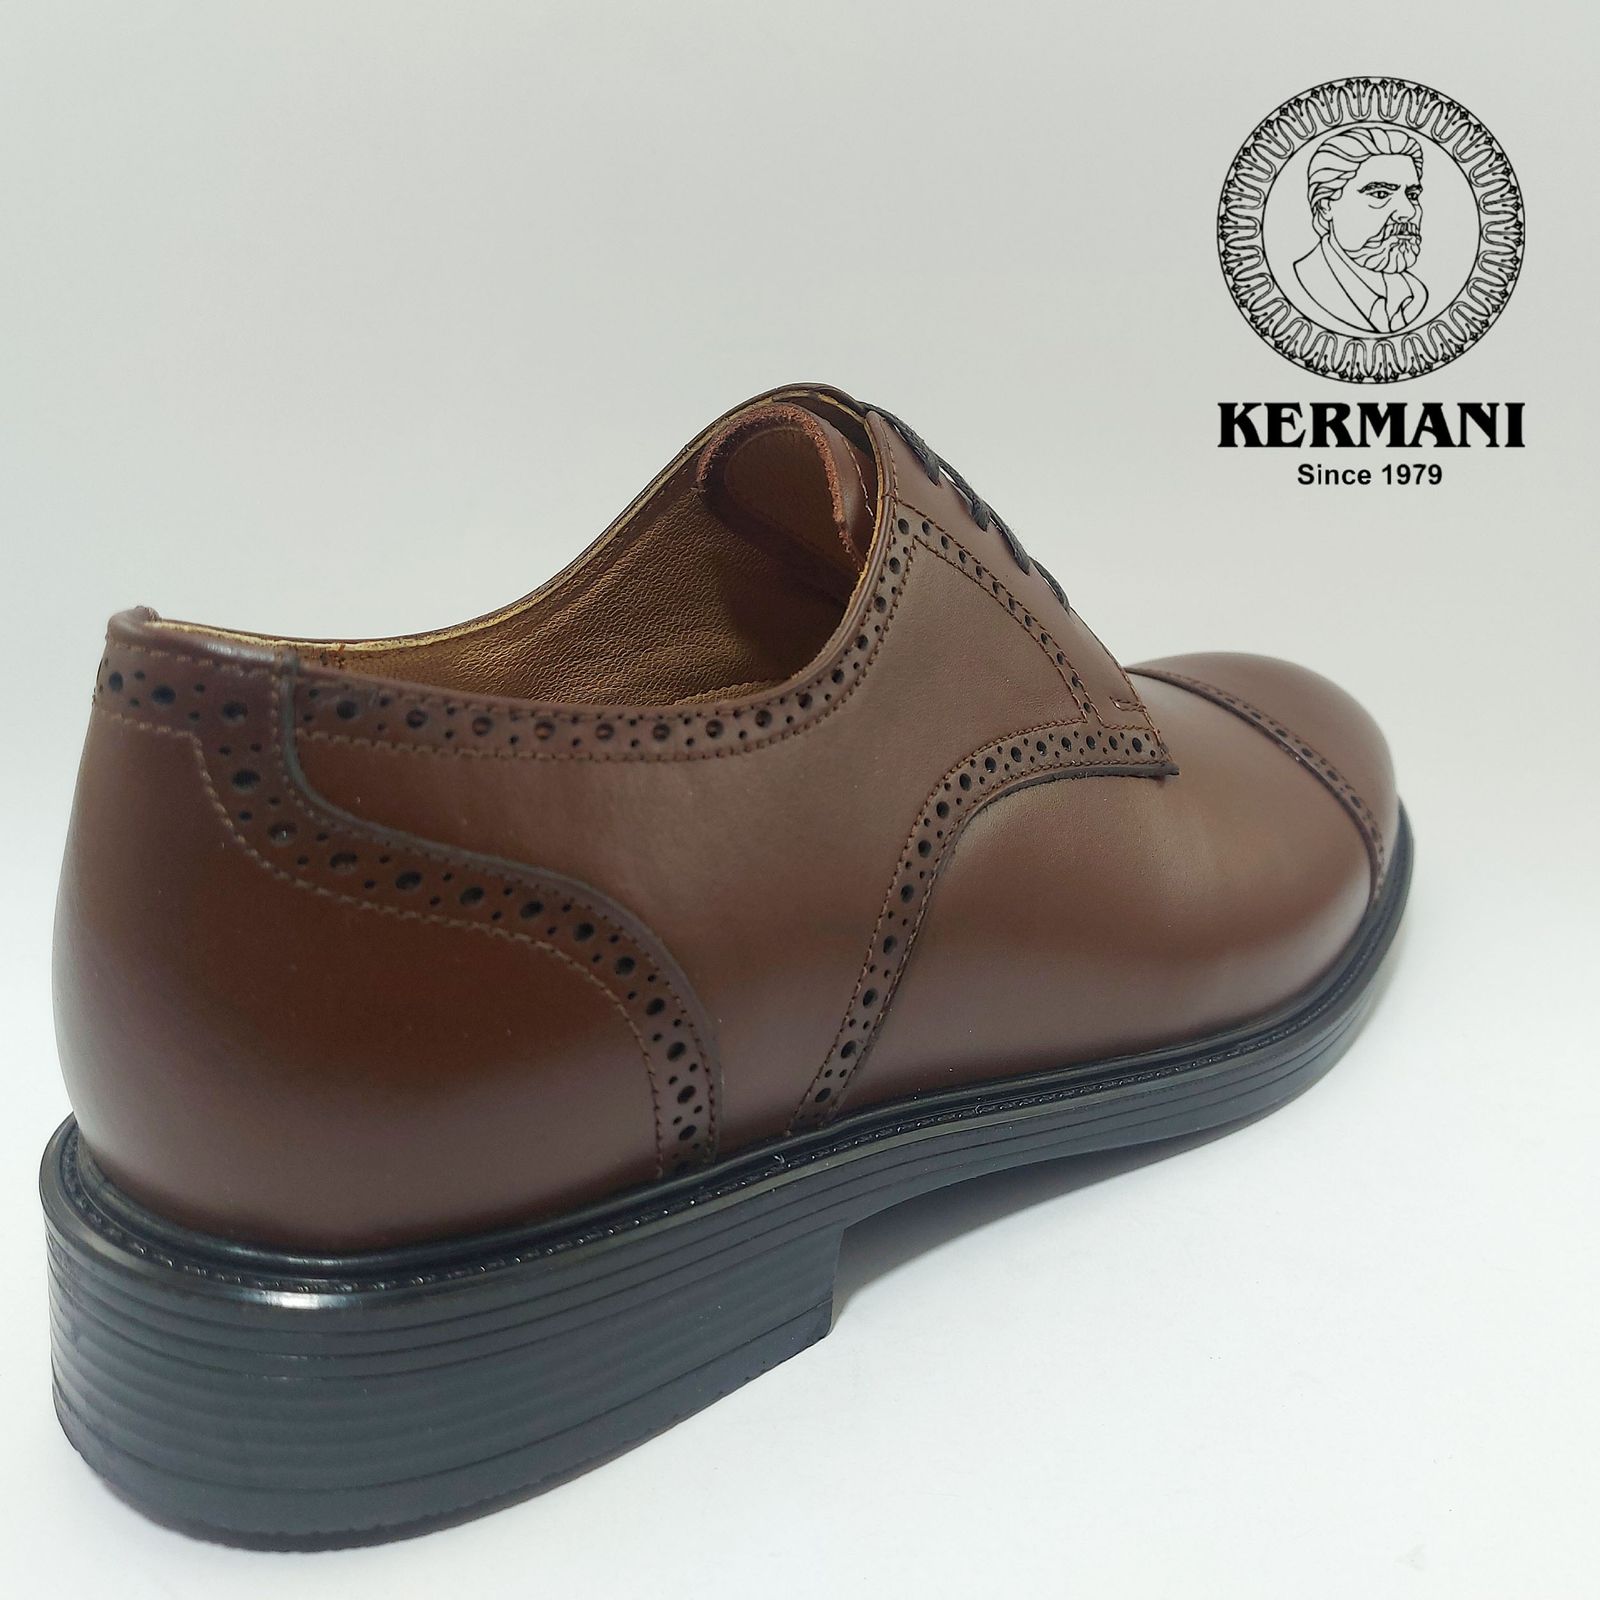 کفش مردانه کرمانی مدل چرم دستدوز طبیعی بِرِت کد 1062 رنگ قهوه ای -  - 5